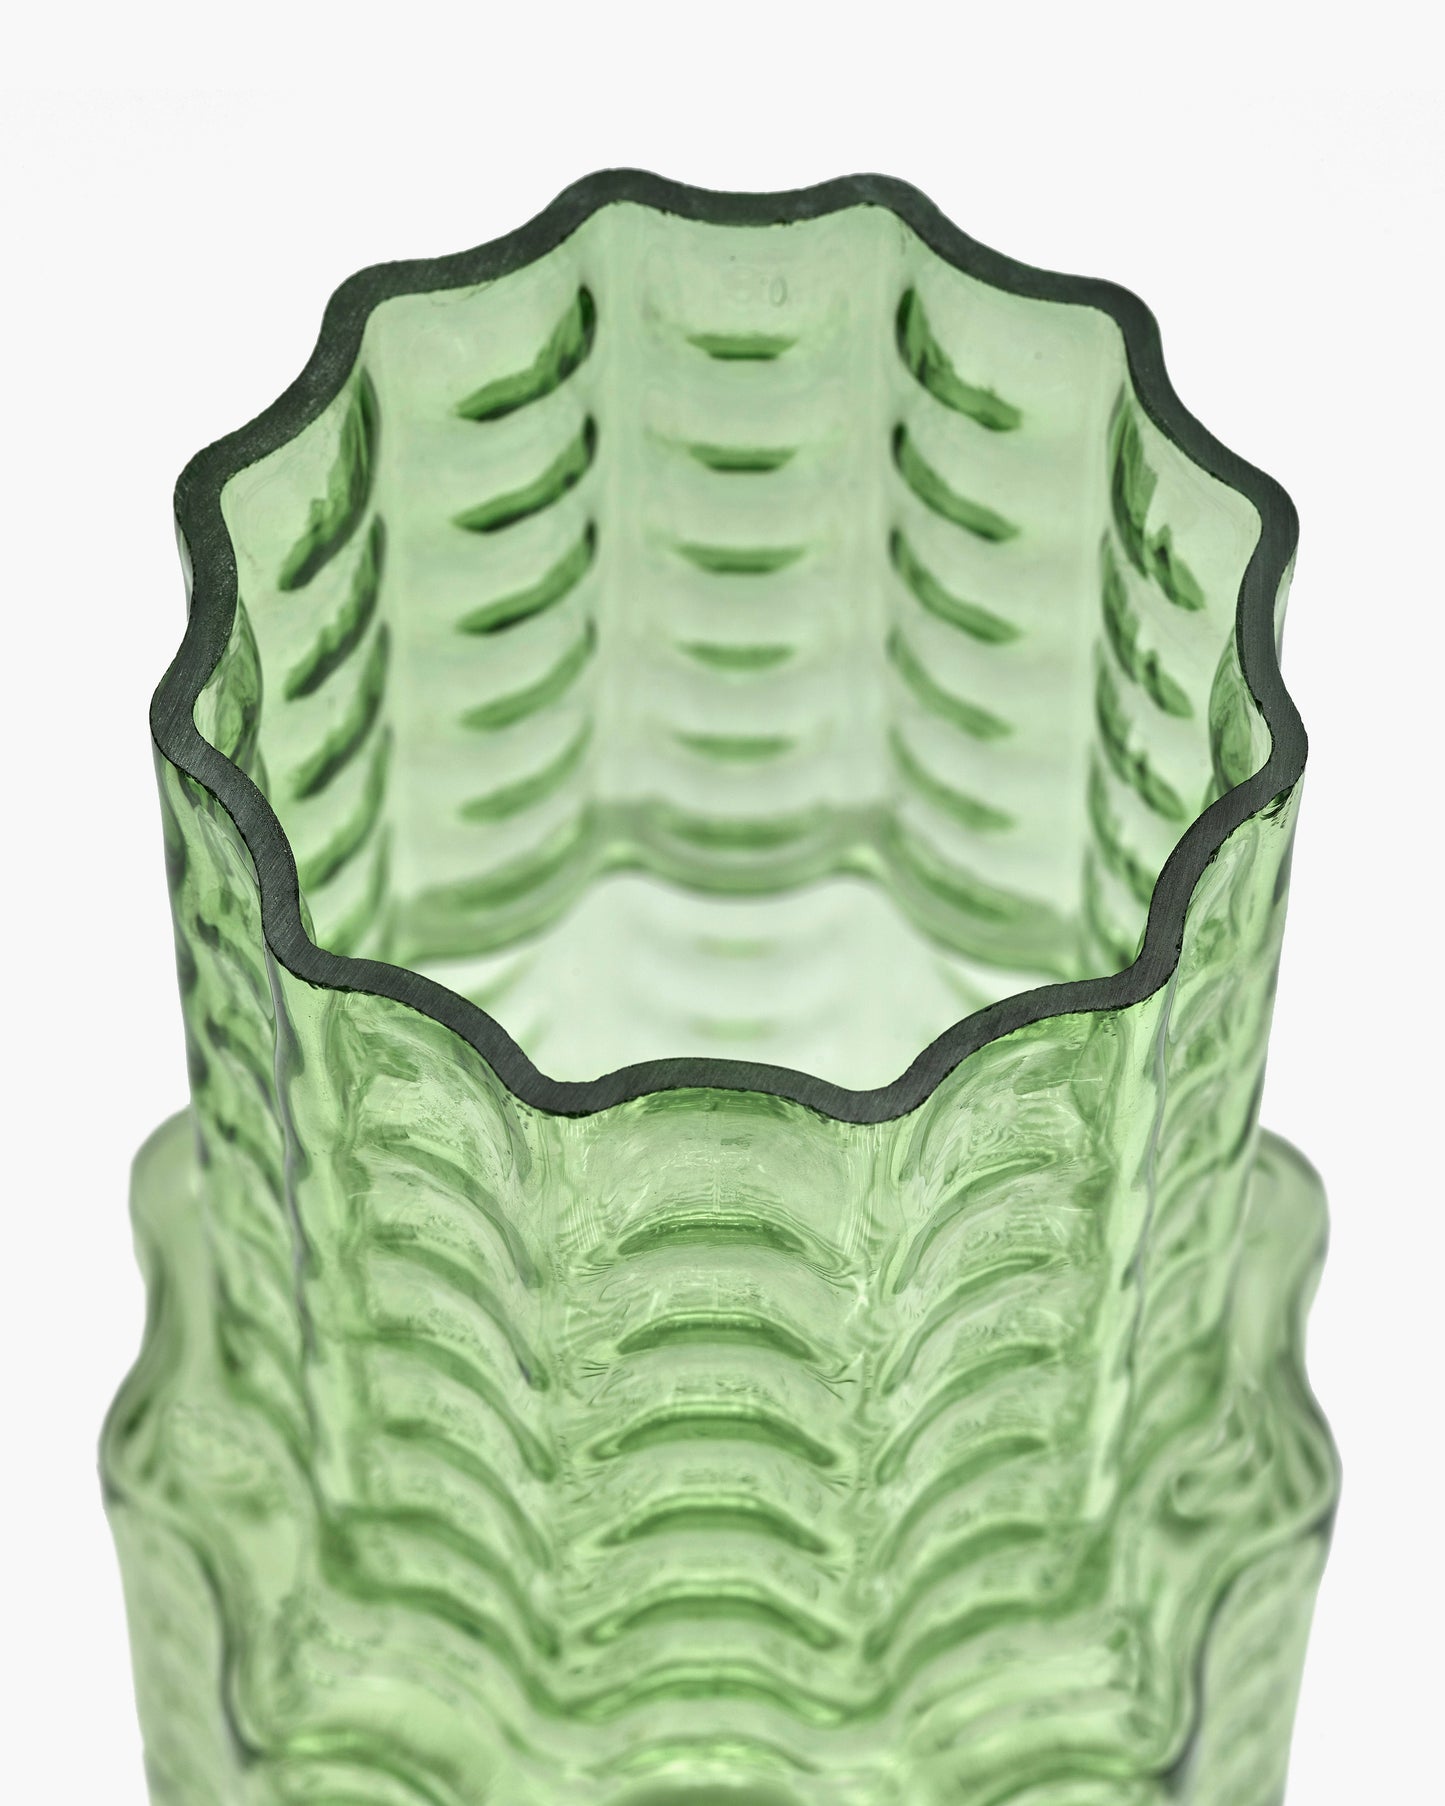 Vase 05 green transparent Waves